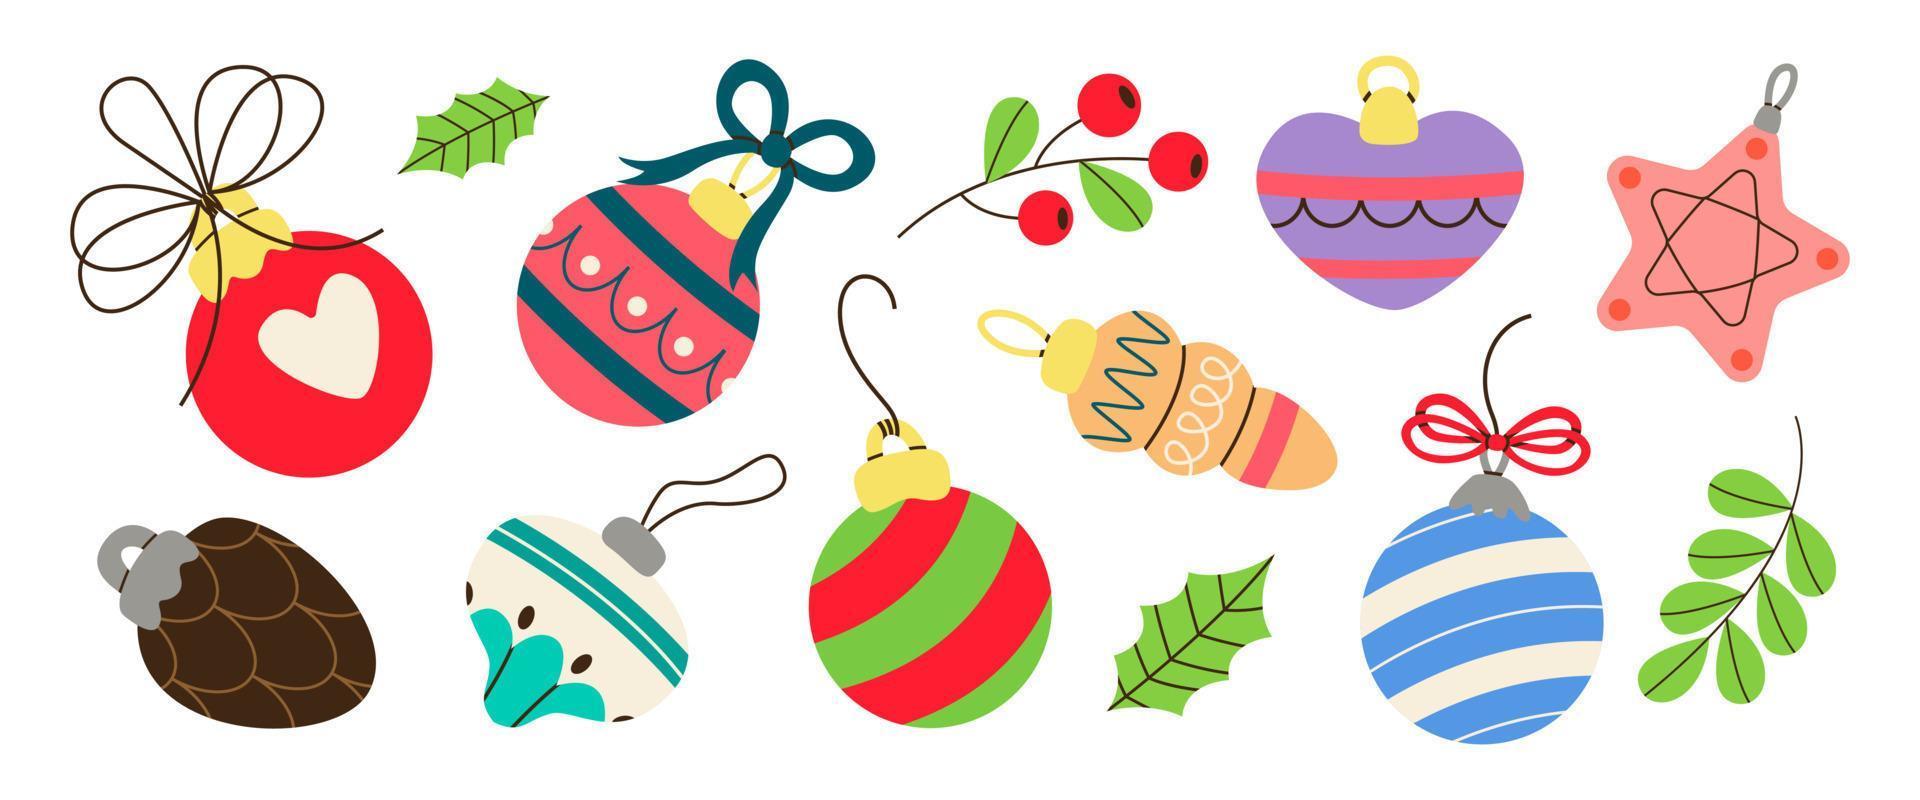 satz festliche weihnachtskugeln, blasen, kegel, bogen. weihnachts- und frohes neues jahr dekorationen. Winterbaumspielzeug, Glaskugeln, Blätter, Beeren und Zweige. Weihnachtsferien. hygge, gemütlicher weihnachtshaushalt. vektor